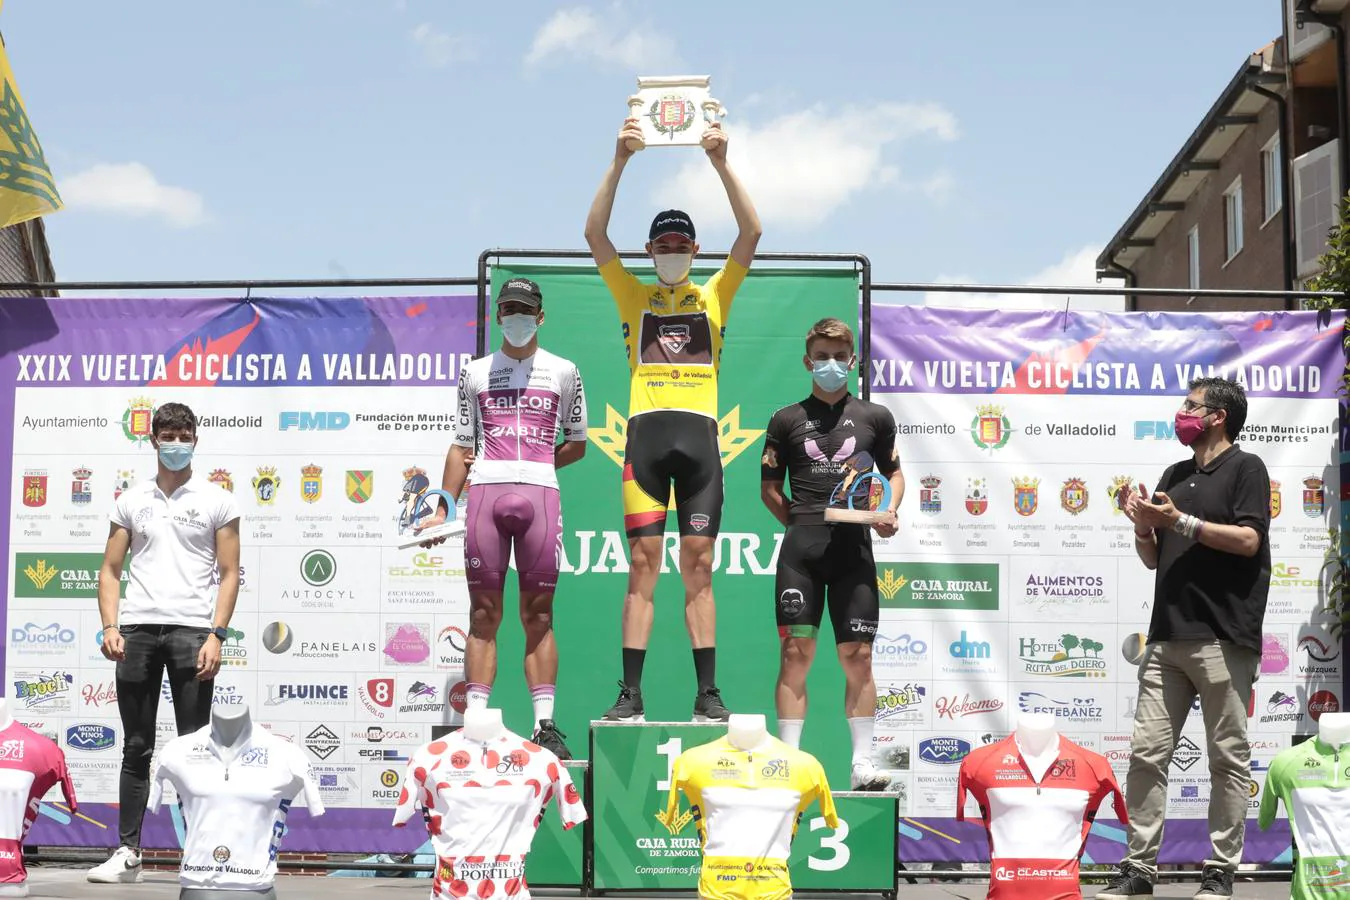 Última etapa de la XXIX Vuelta Ciclista a Valladolid